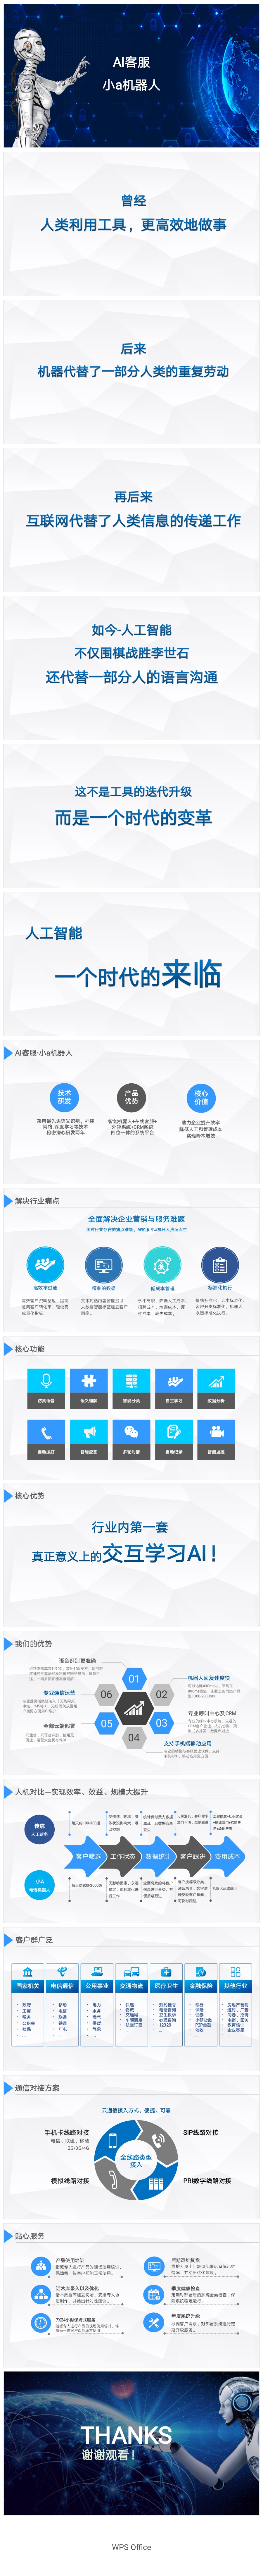 深圳市通信助手电话自动外呼系统中小企业厂家